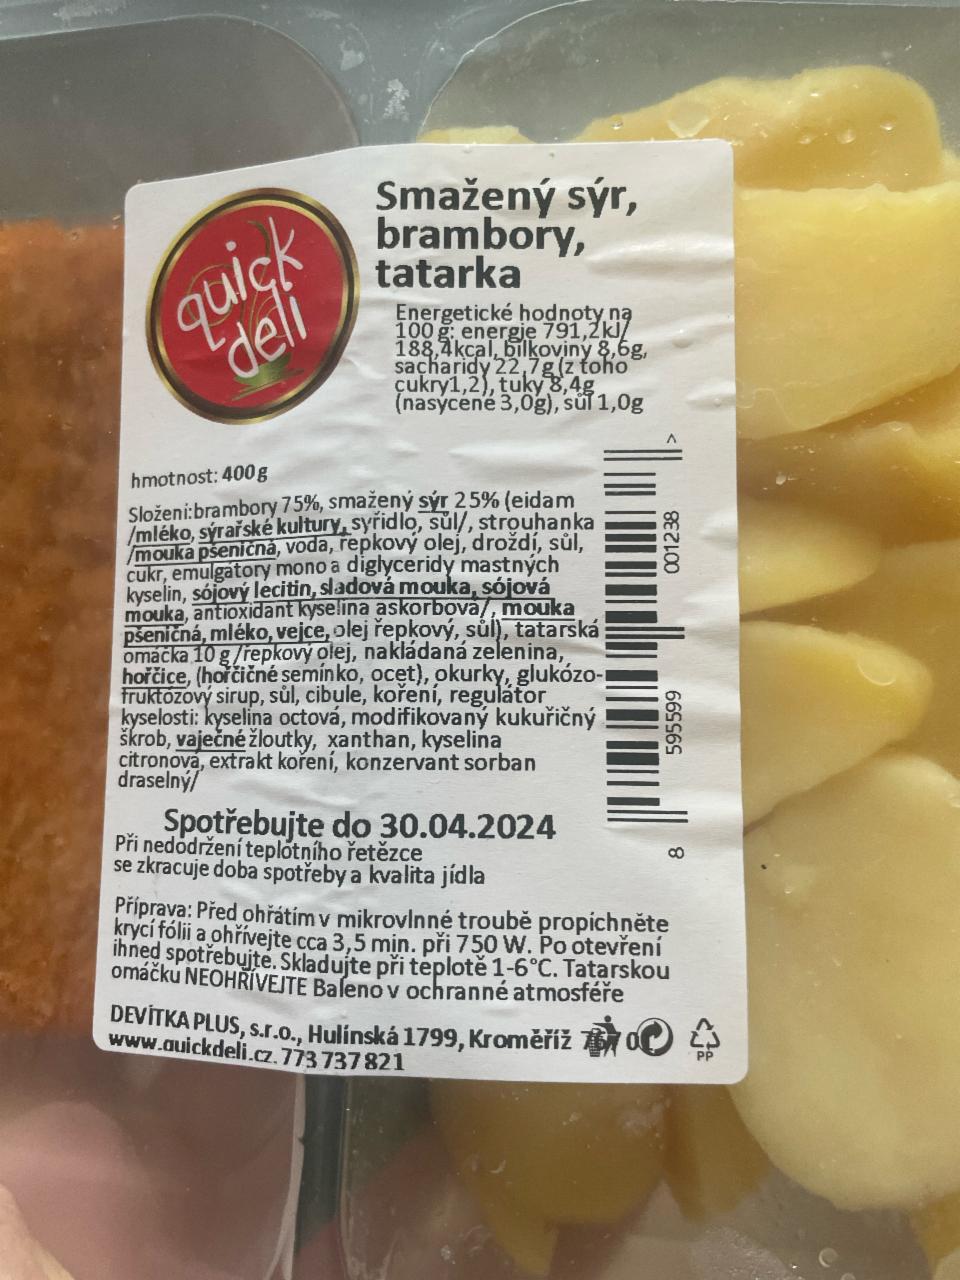 Fotografie - Smažený sýr, brambory, tatarka quick deli